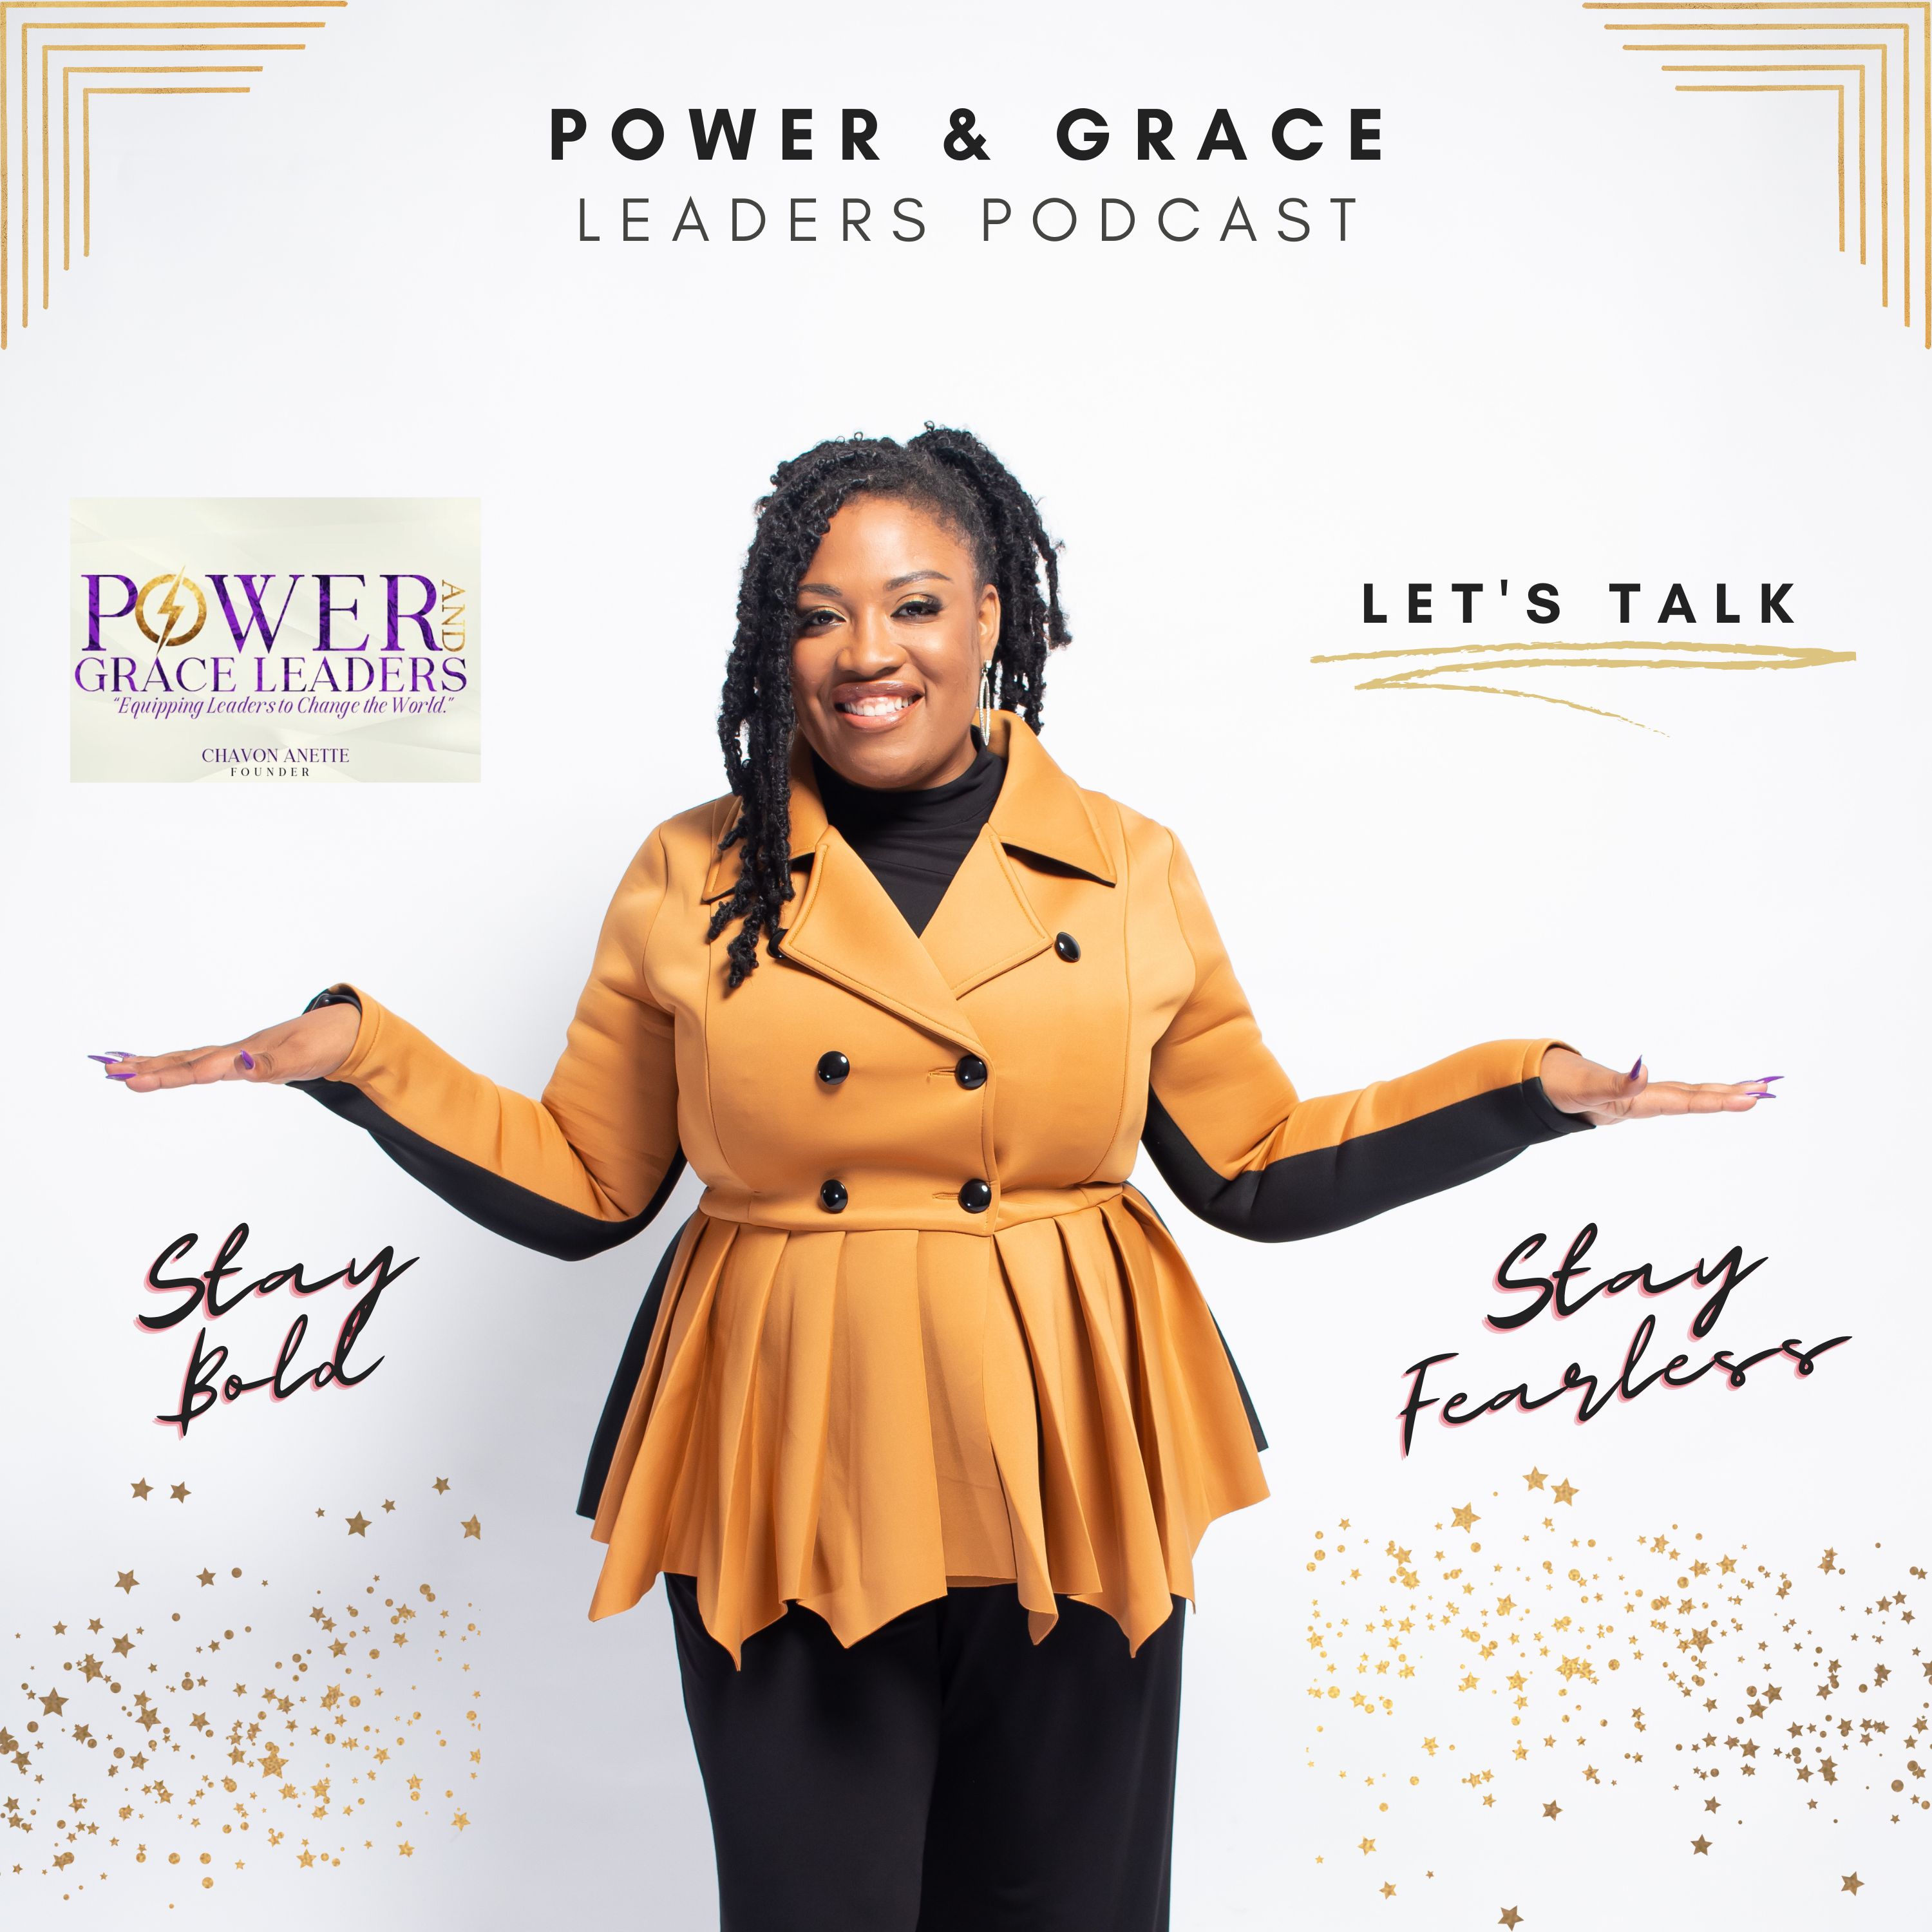 Artwork for podcast Power & Grace Leaders